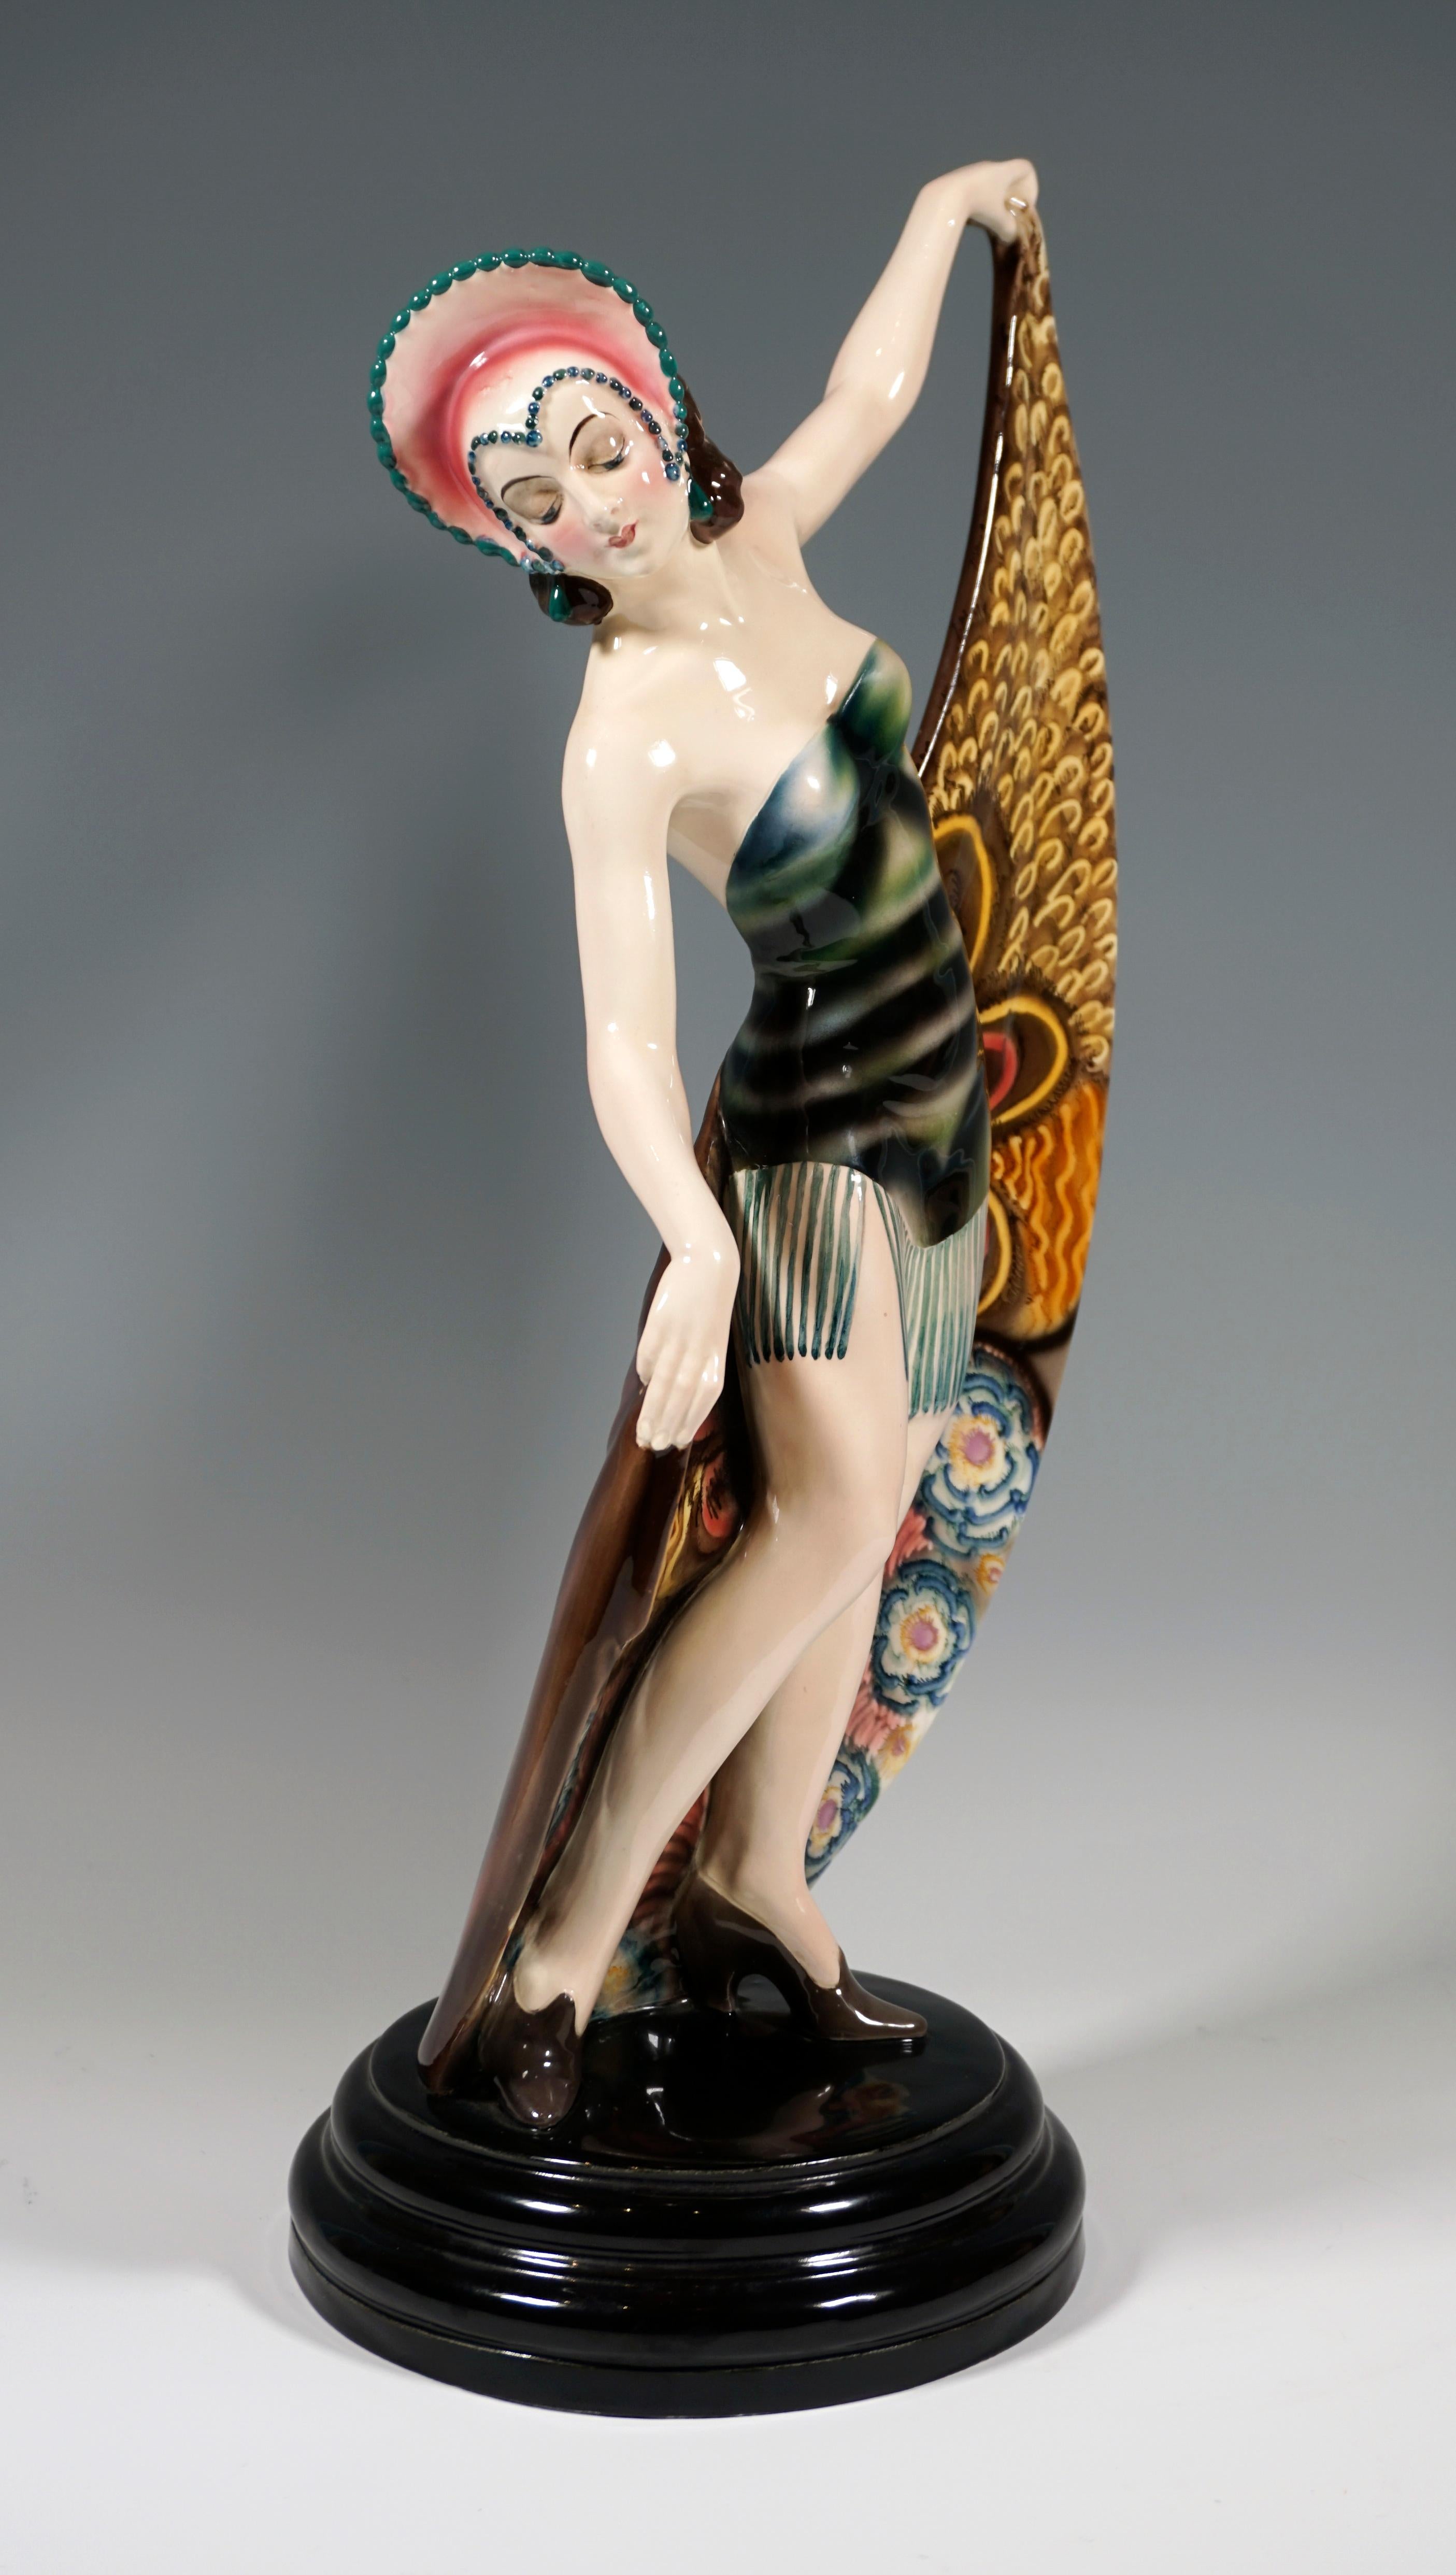 Seltene Goldscheider Art Deco Keramikfigur aus den 1920er Jahren: 
Darstellung einer Tänzerin in Pose. Sie trägt einen Kopfschmuck, der vorne spitz zuläuft und ihr Gesicht umrahmt, und ein kurzes, trägerloses Kleid mit langen Fransen. Mit geneigtem